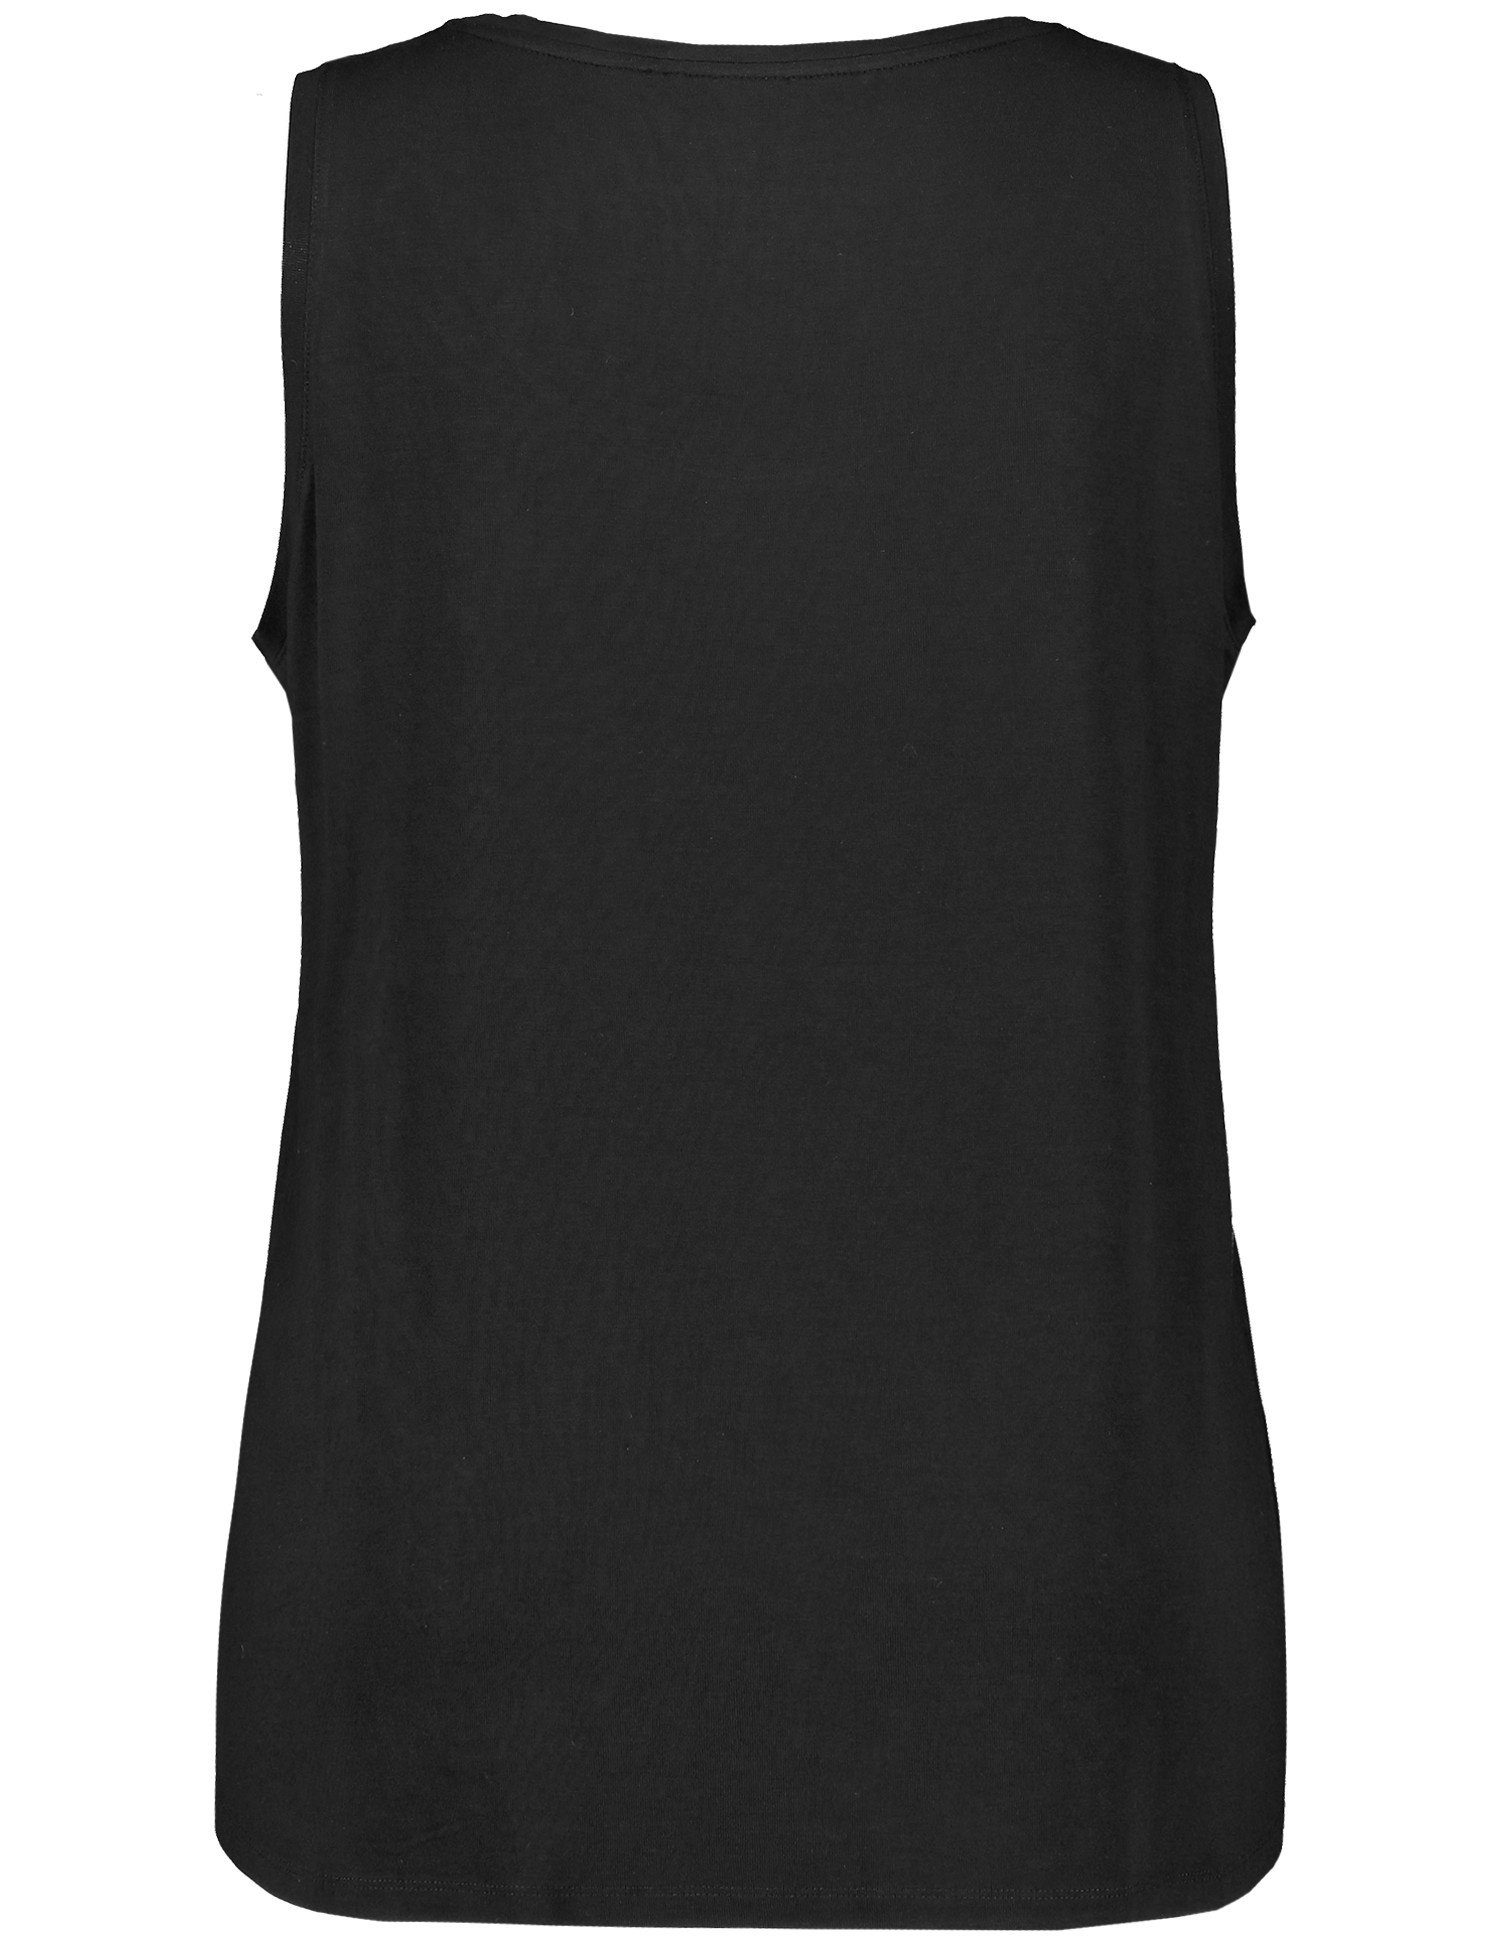 Samoon Shirttop Basic-Top mit Black Seitenschlitzen